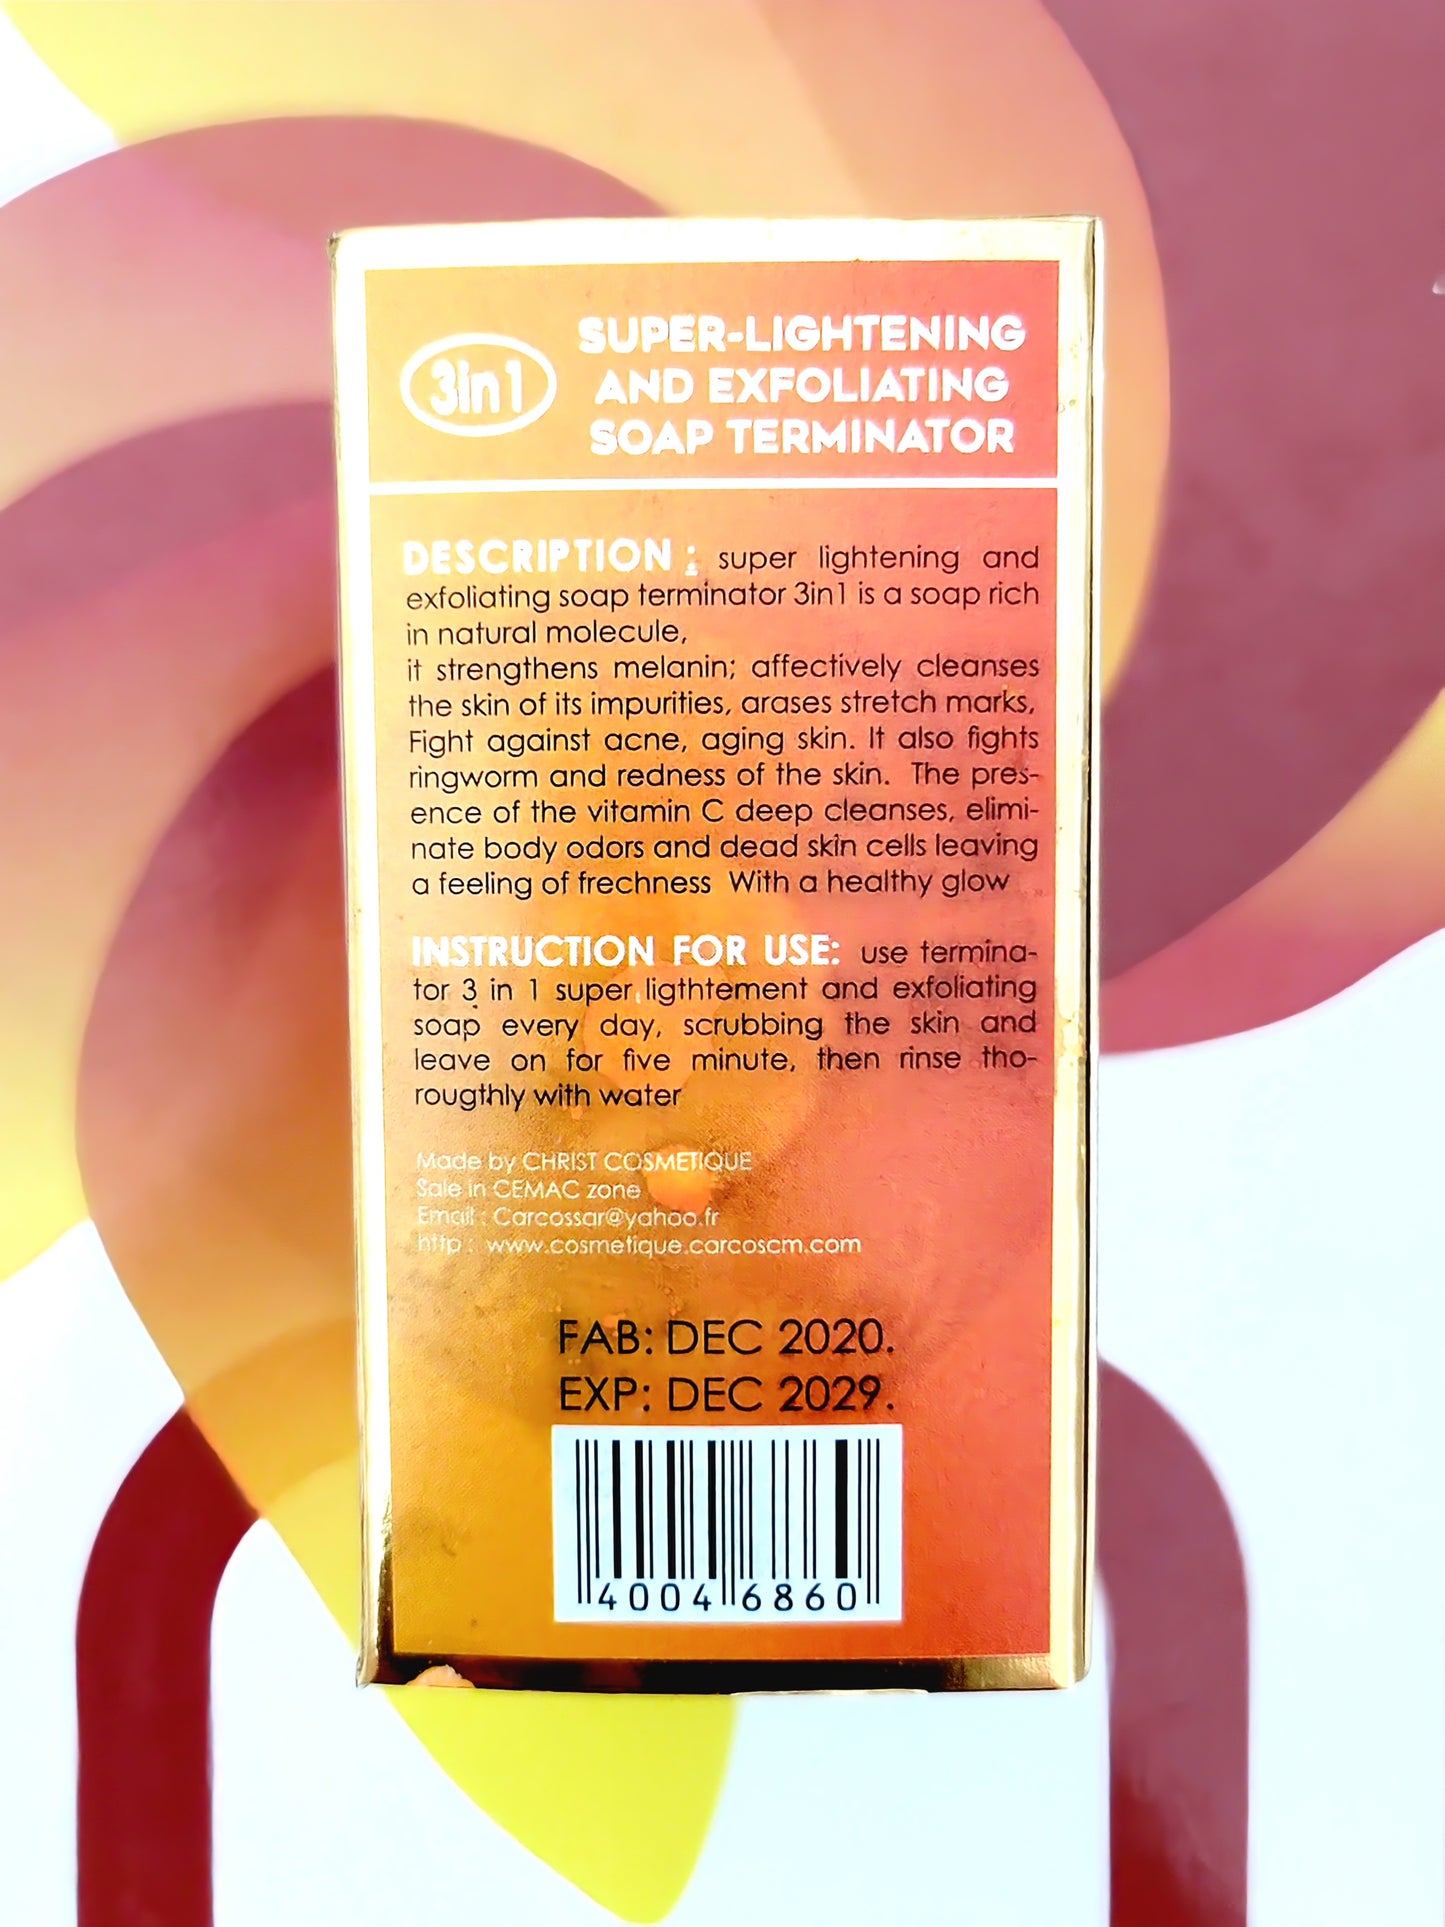 Super-Lightening and Exfoliating Soap Terminator 3in1 200g